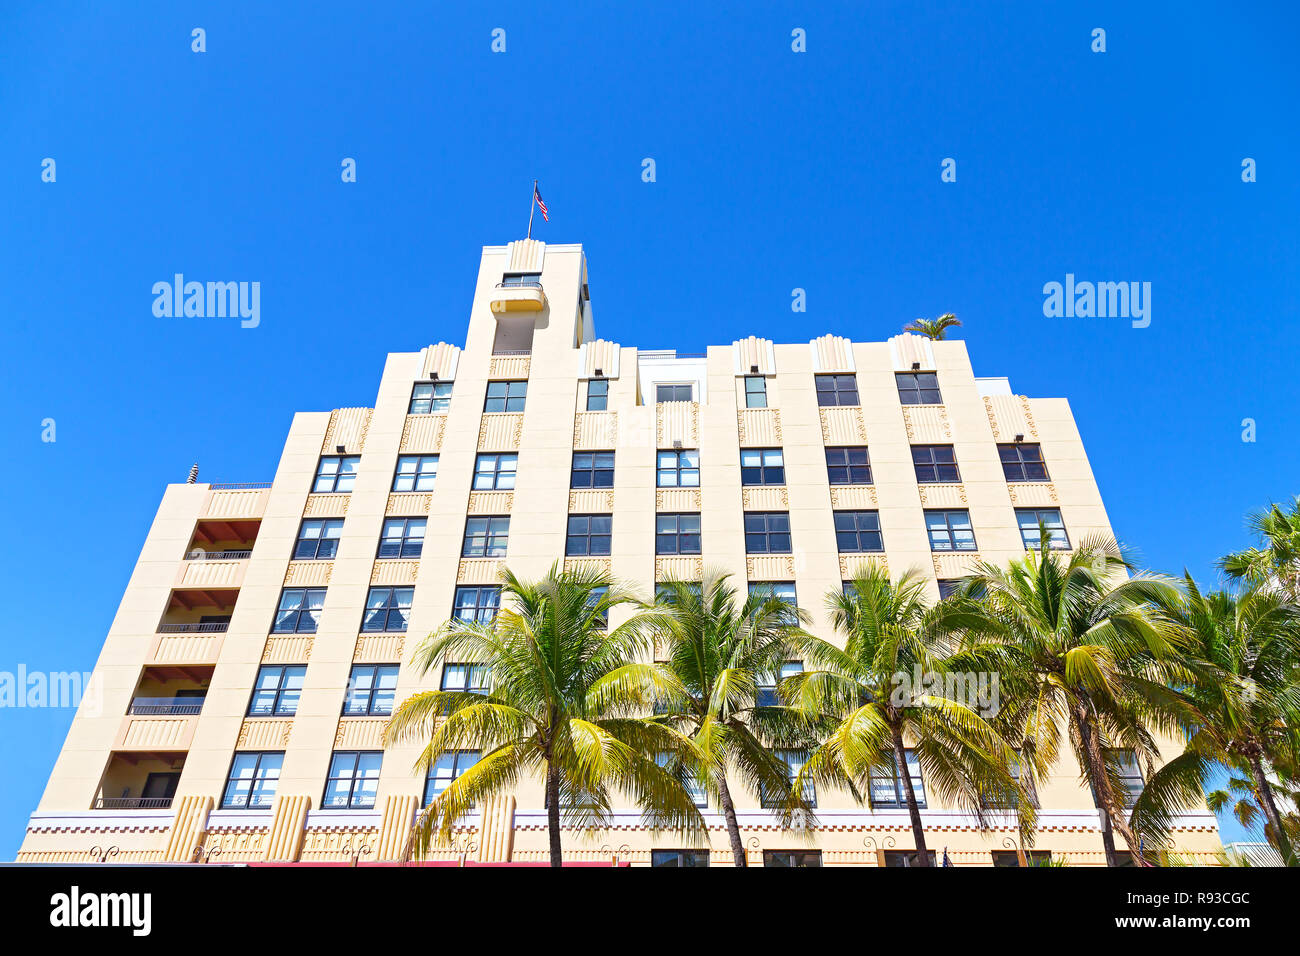 Façade du bâtiment art déco de Miami Beach, en Floride. Palmiers et façade du bâtiment contre un ciel bleu clair. Banque D'Images